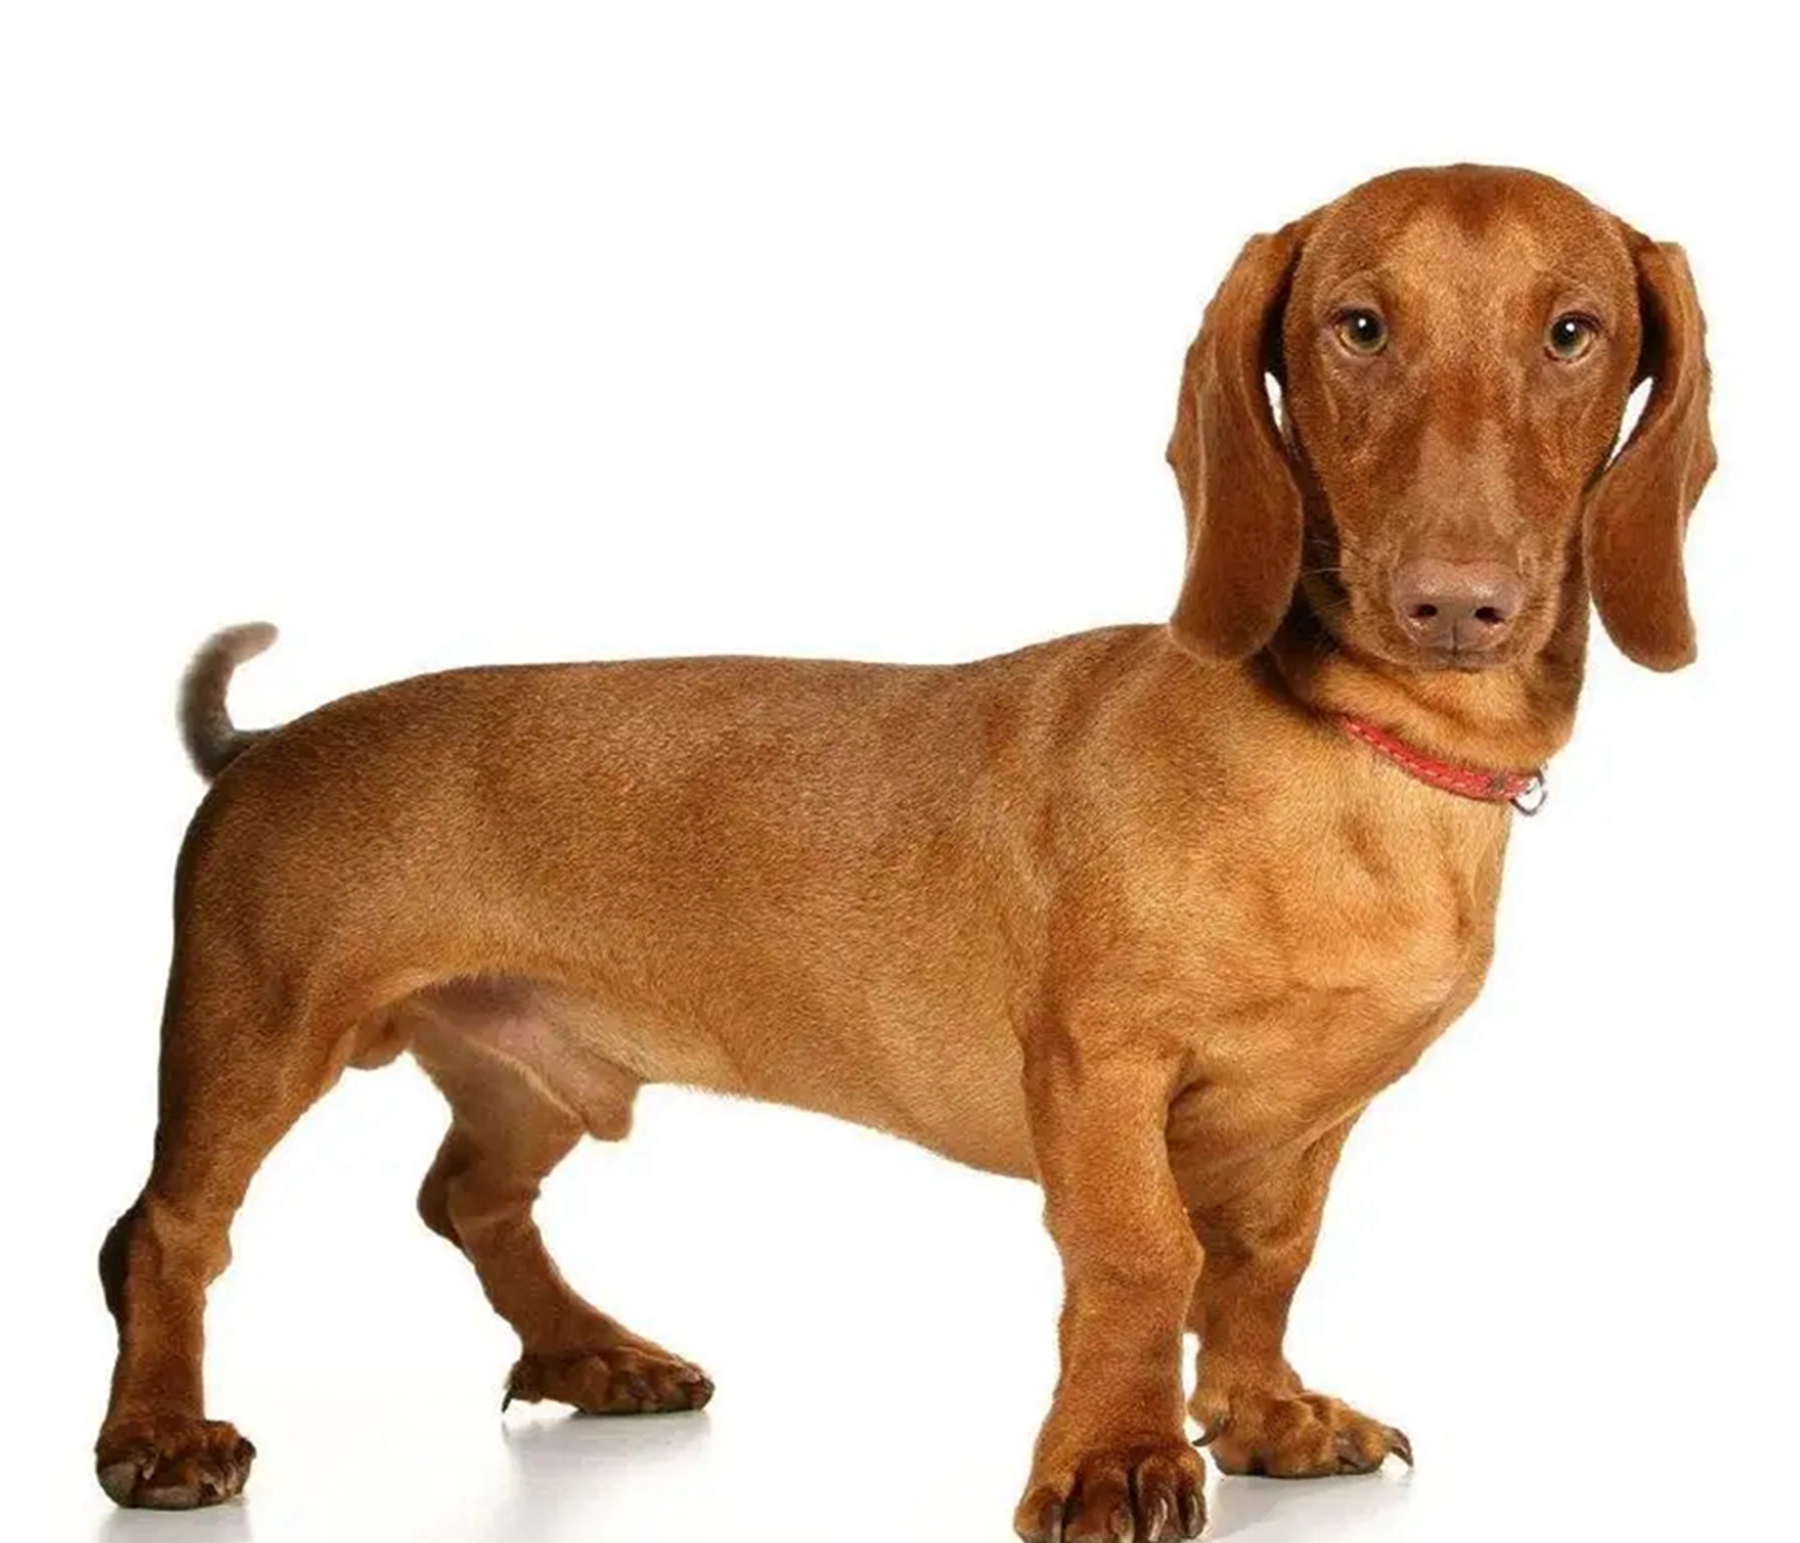 耳朵很大的狗是什么品种?